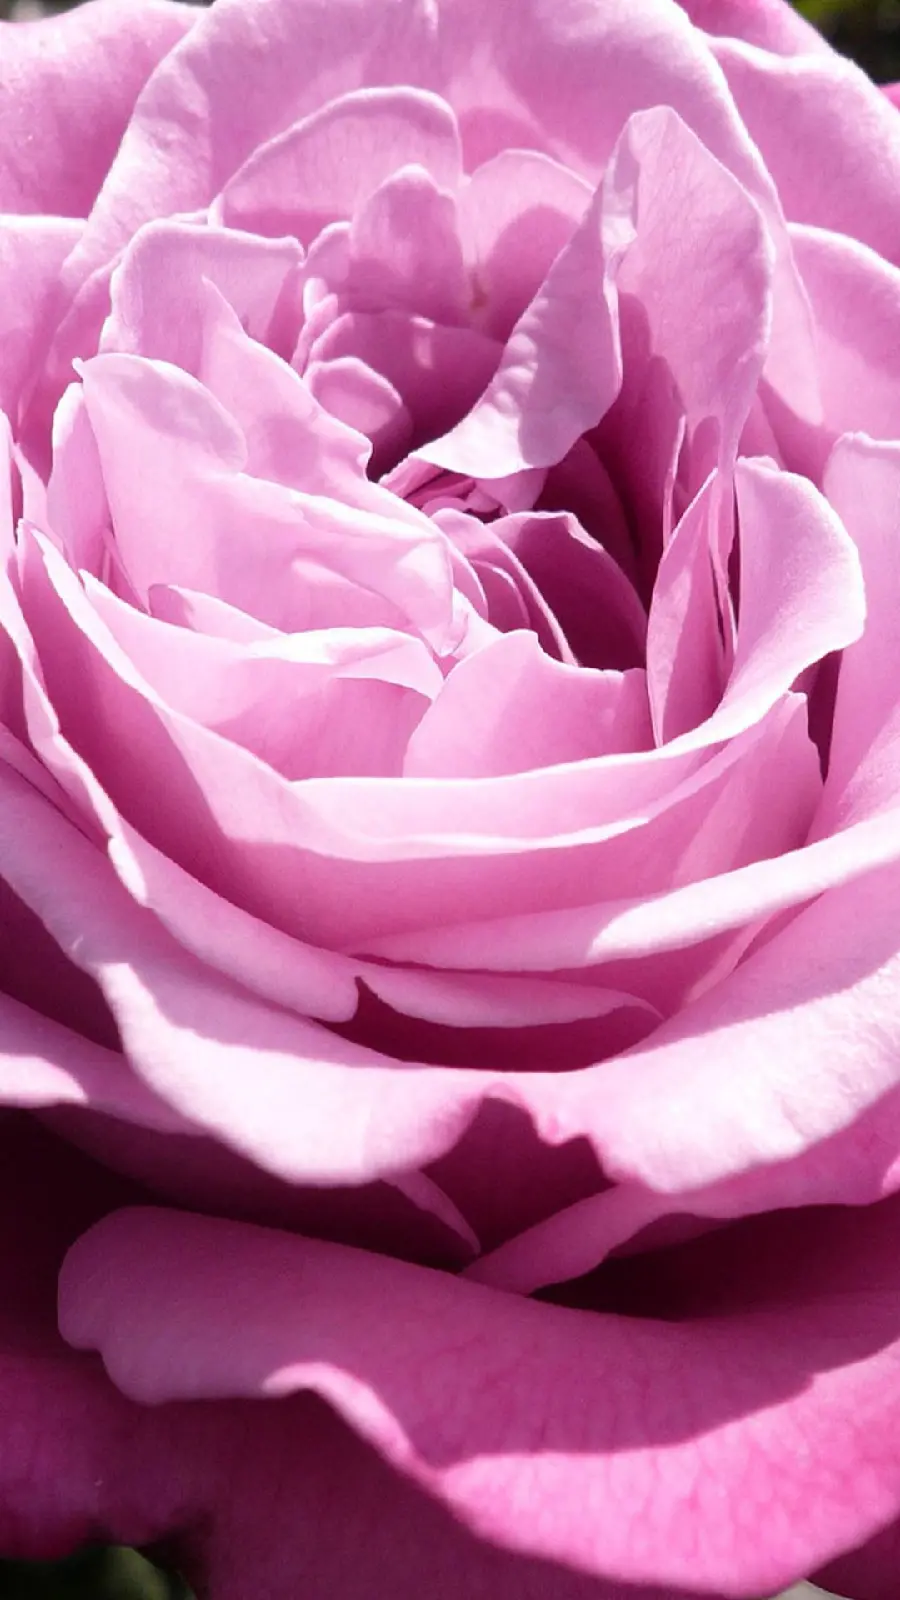 عکس زمینە عظیم الجثە از گلبرگ‌های گل رز بنفش باکیفیت اچ دی